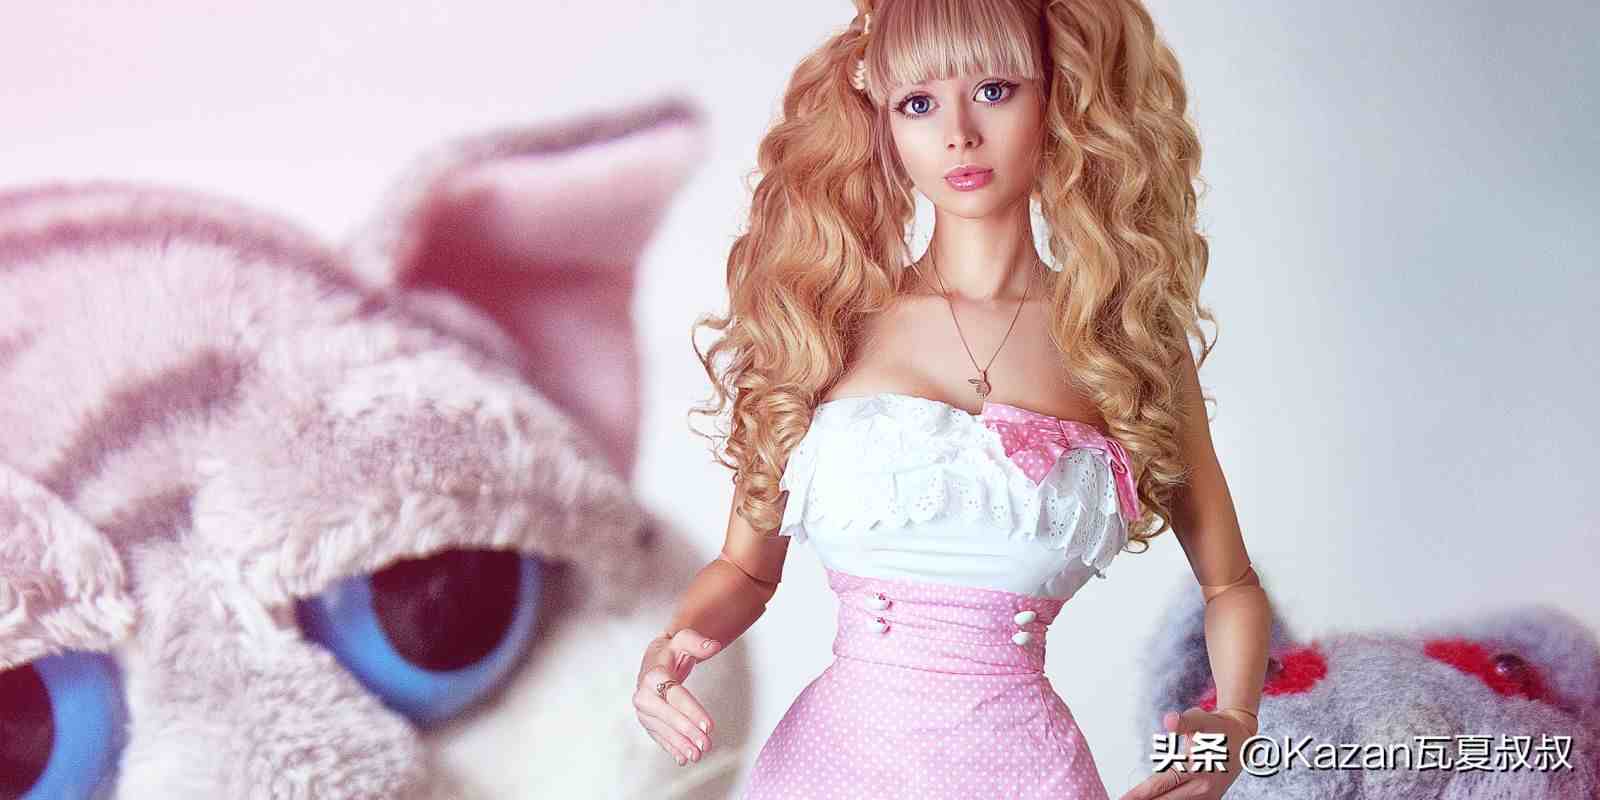 她是俄罗斯真人芭比，天使面孔魔鬼身材，却沦为父母的玩具和木偶